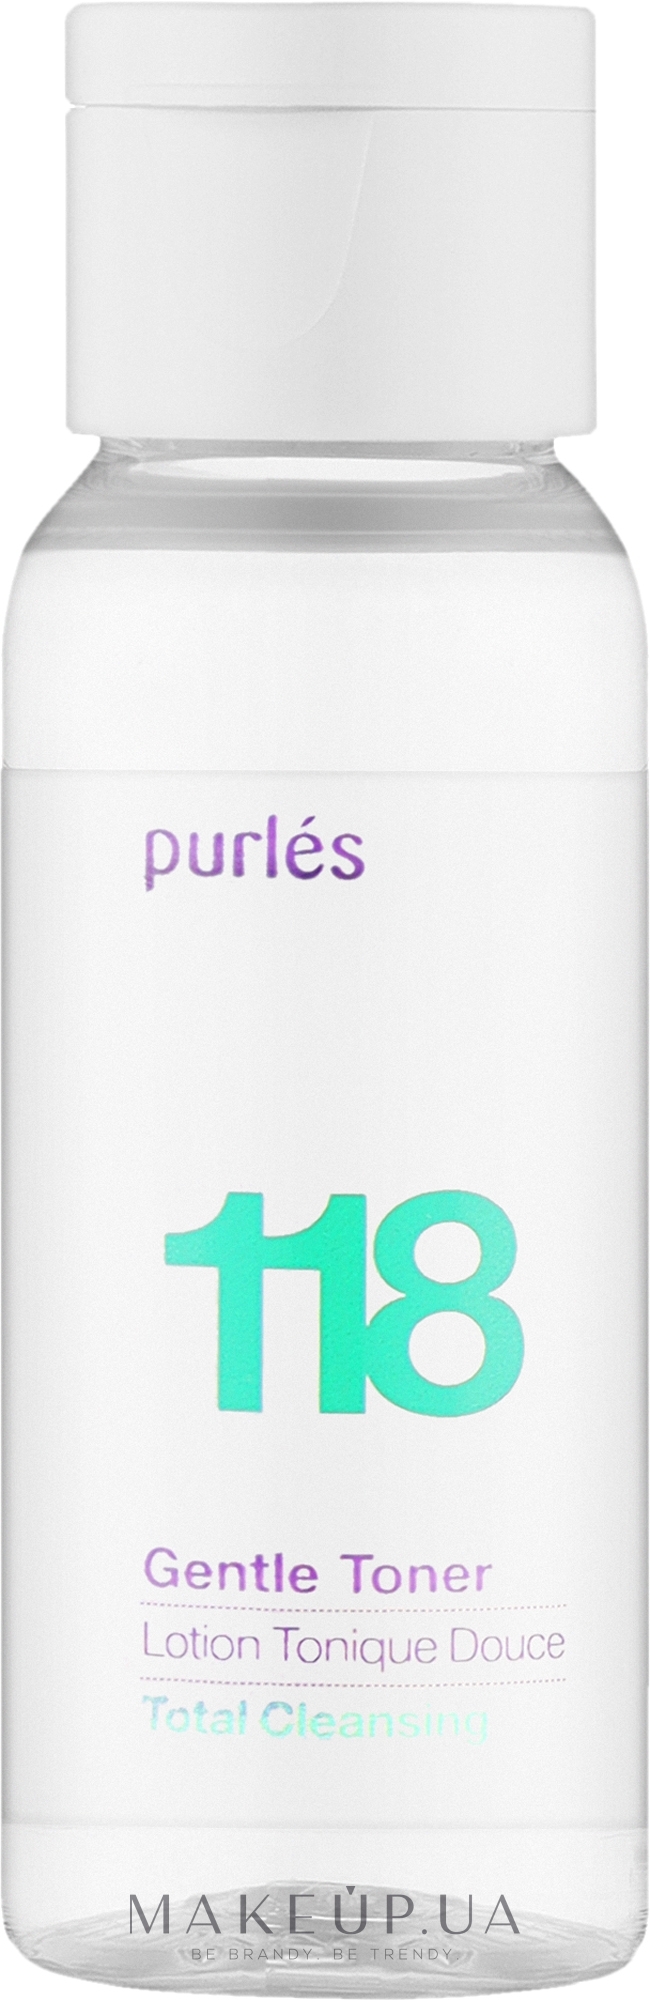 Нежный тоник для лица - Purles Total Cleansing 118 Gentle Toner (мини) — фото 25ml